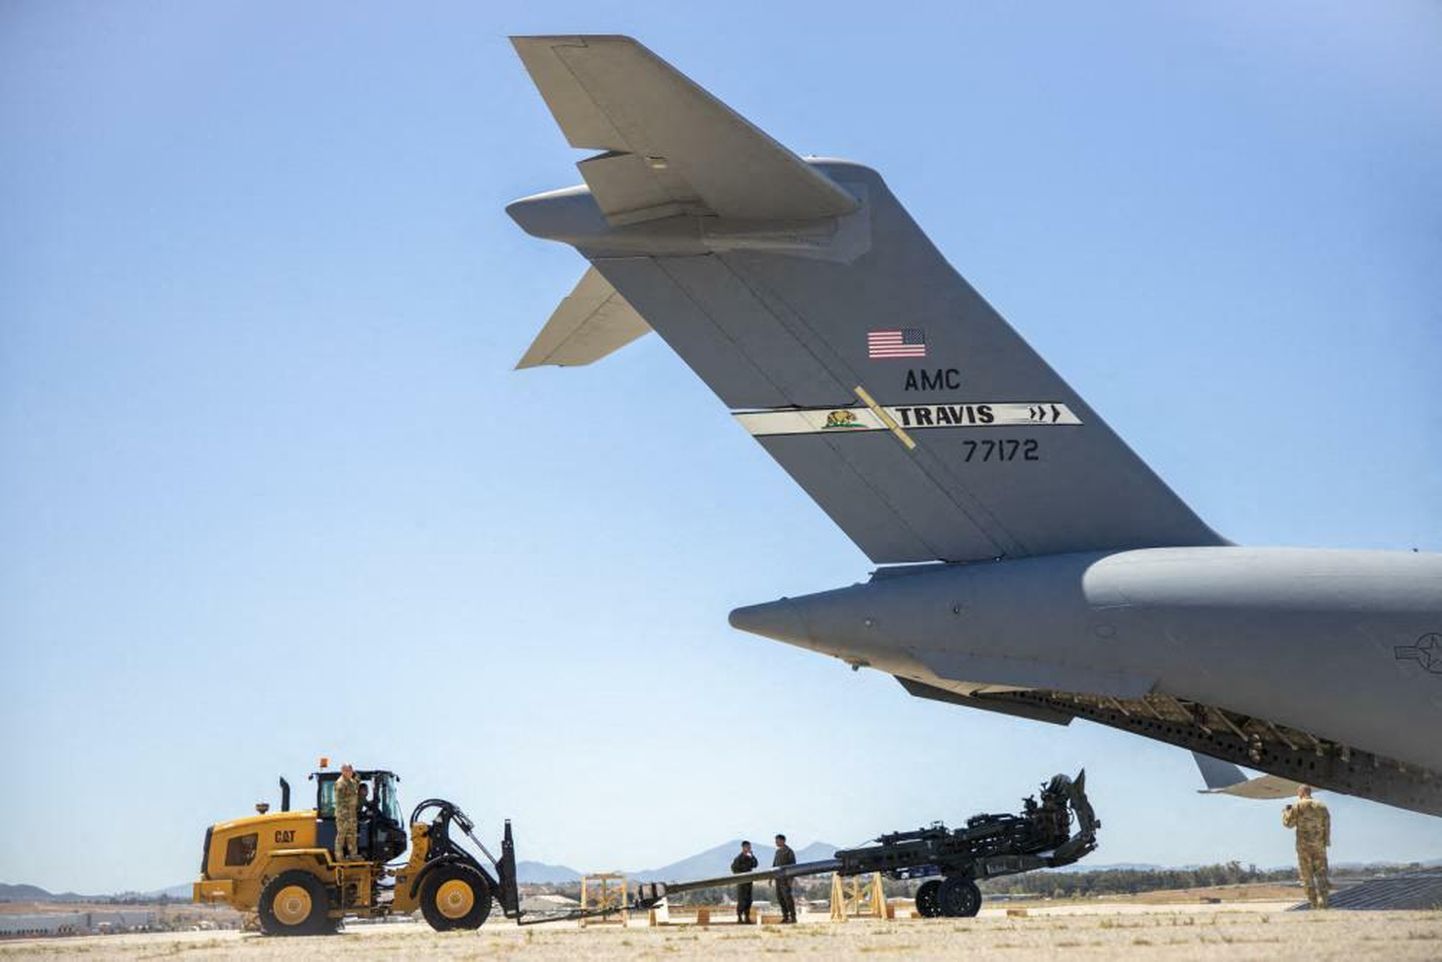 USA merevägi valmistab ette haubitsate saadetist Ukrainale. Foto on tehtud 27. aprillil California õhuväebaasis.